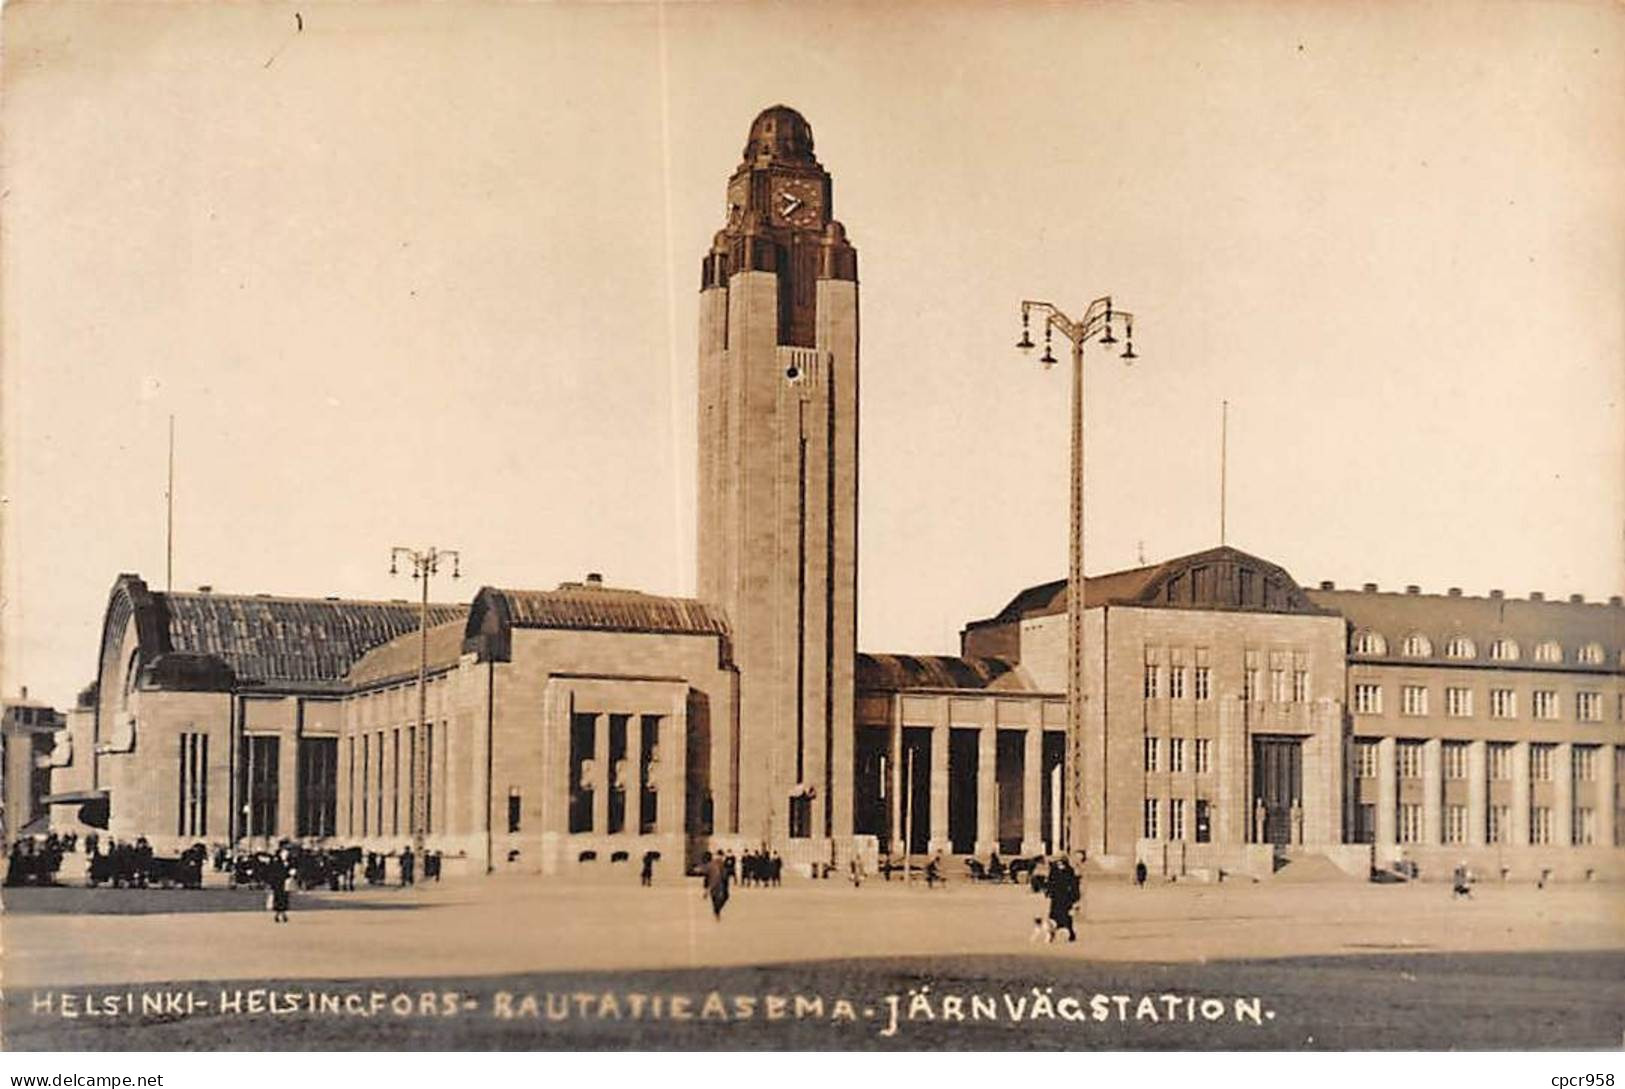 FINLAND - HELSINKI - SAN39276 - Helsingfors - Rautatieasema - Järnvägstation - Finlande